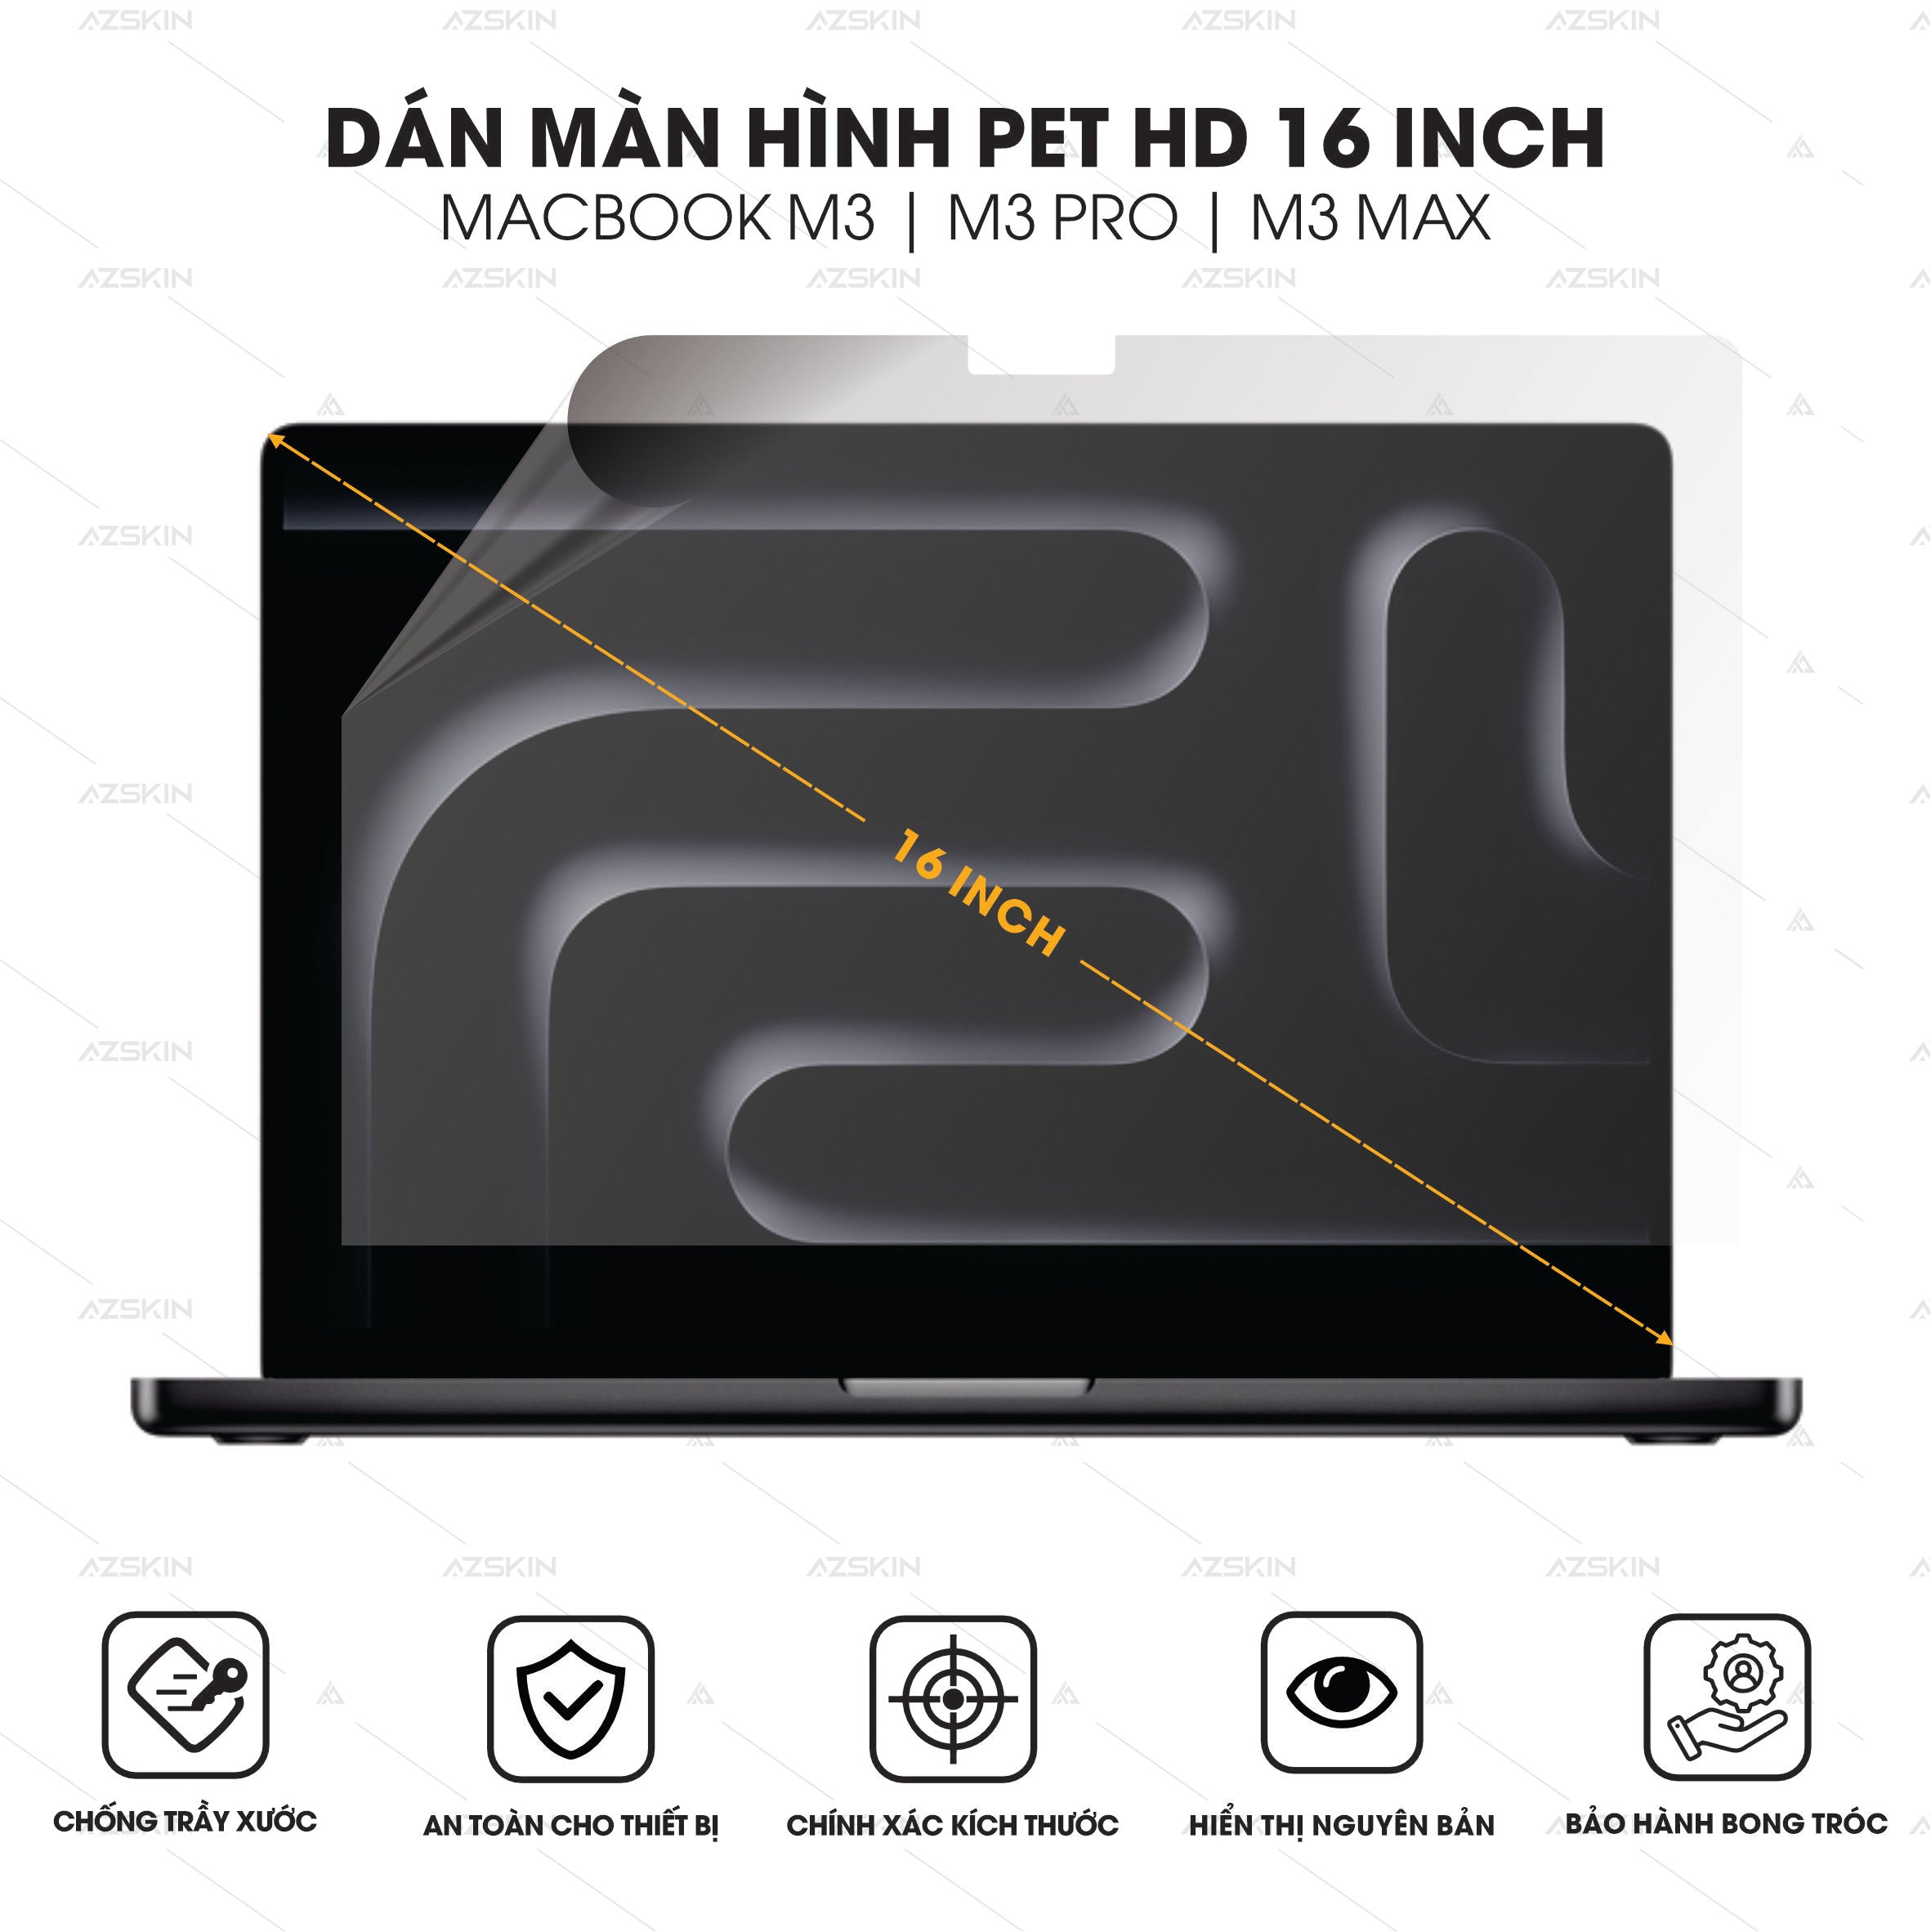 Miếng dán màn hình PET HD cho Macbook M3 / M3 Pro / M3 Max 16 inch